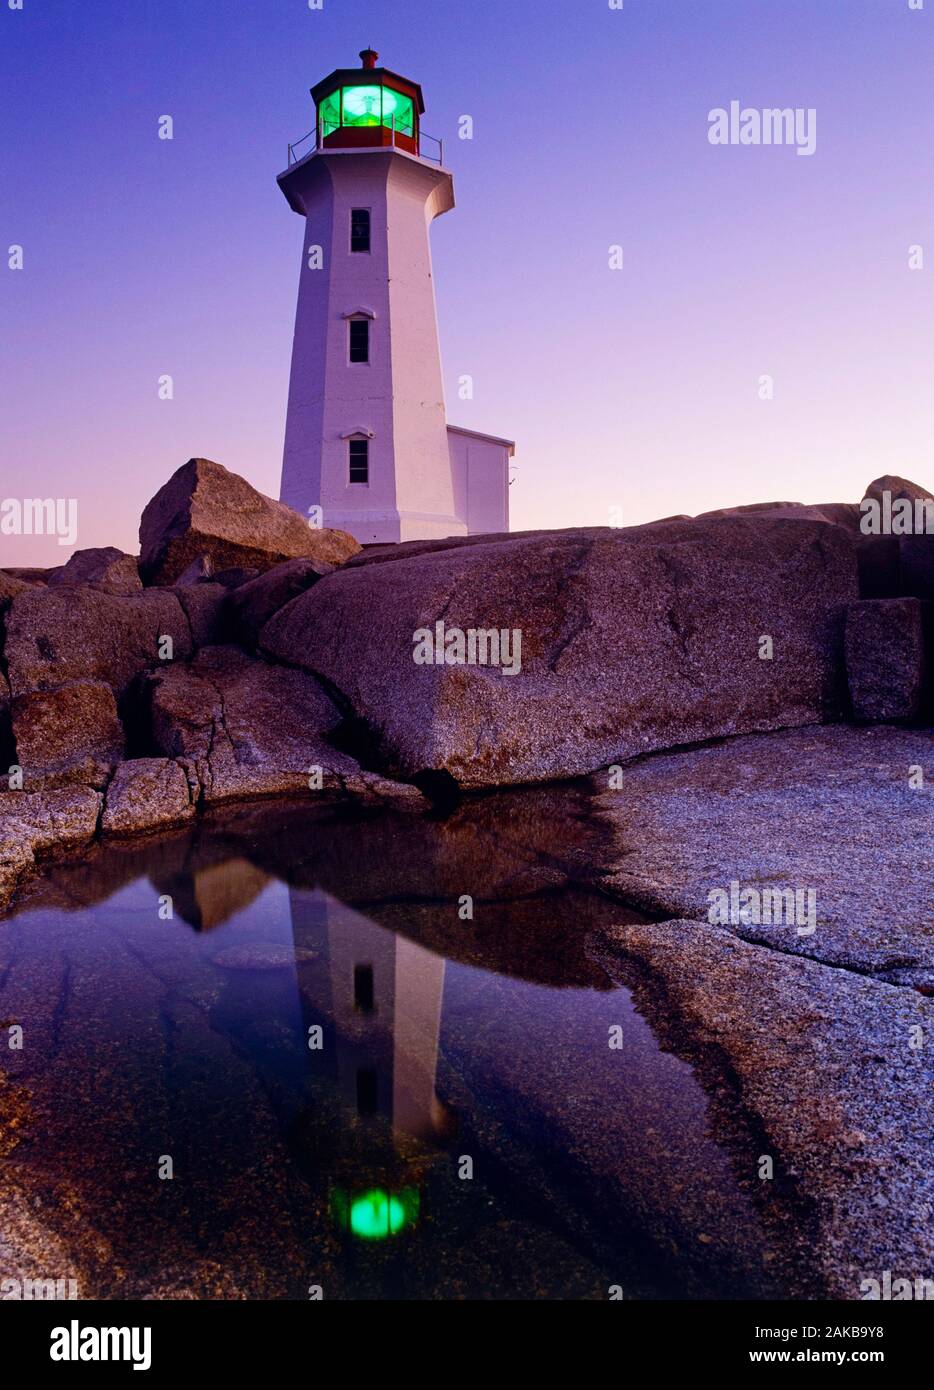 Le phare de Peggy's Cove au coucher du soleil, Peggy's Cove, Nova Scotia, Canada Banque D'Images